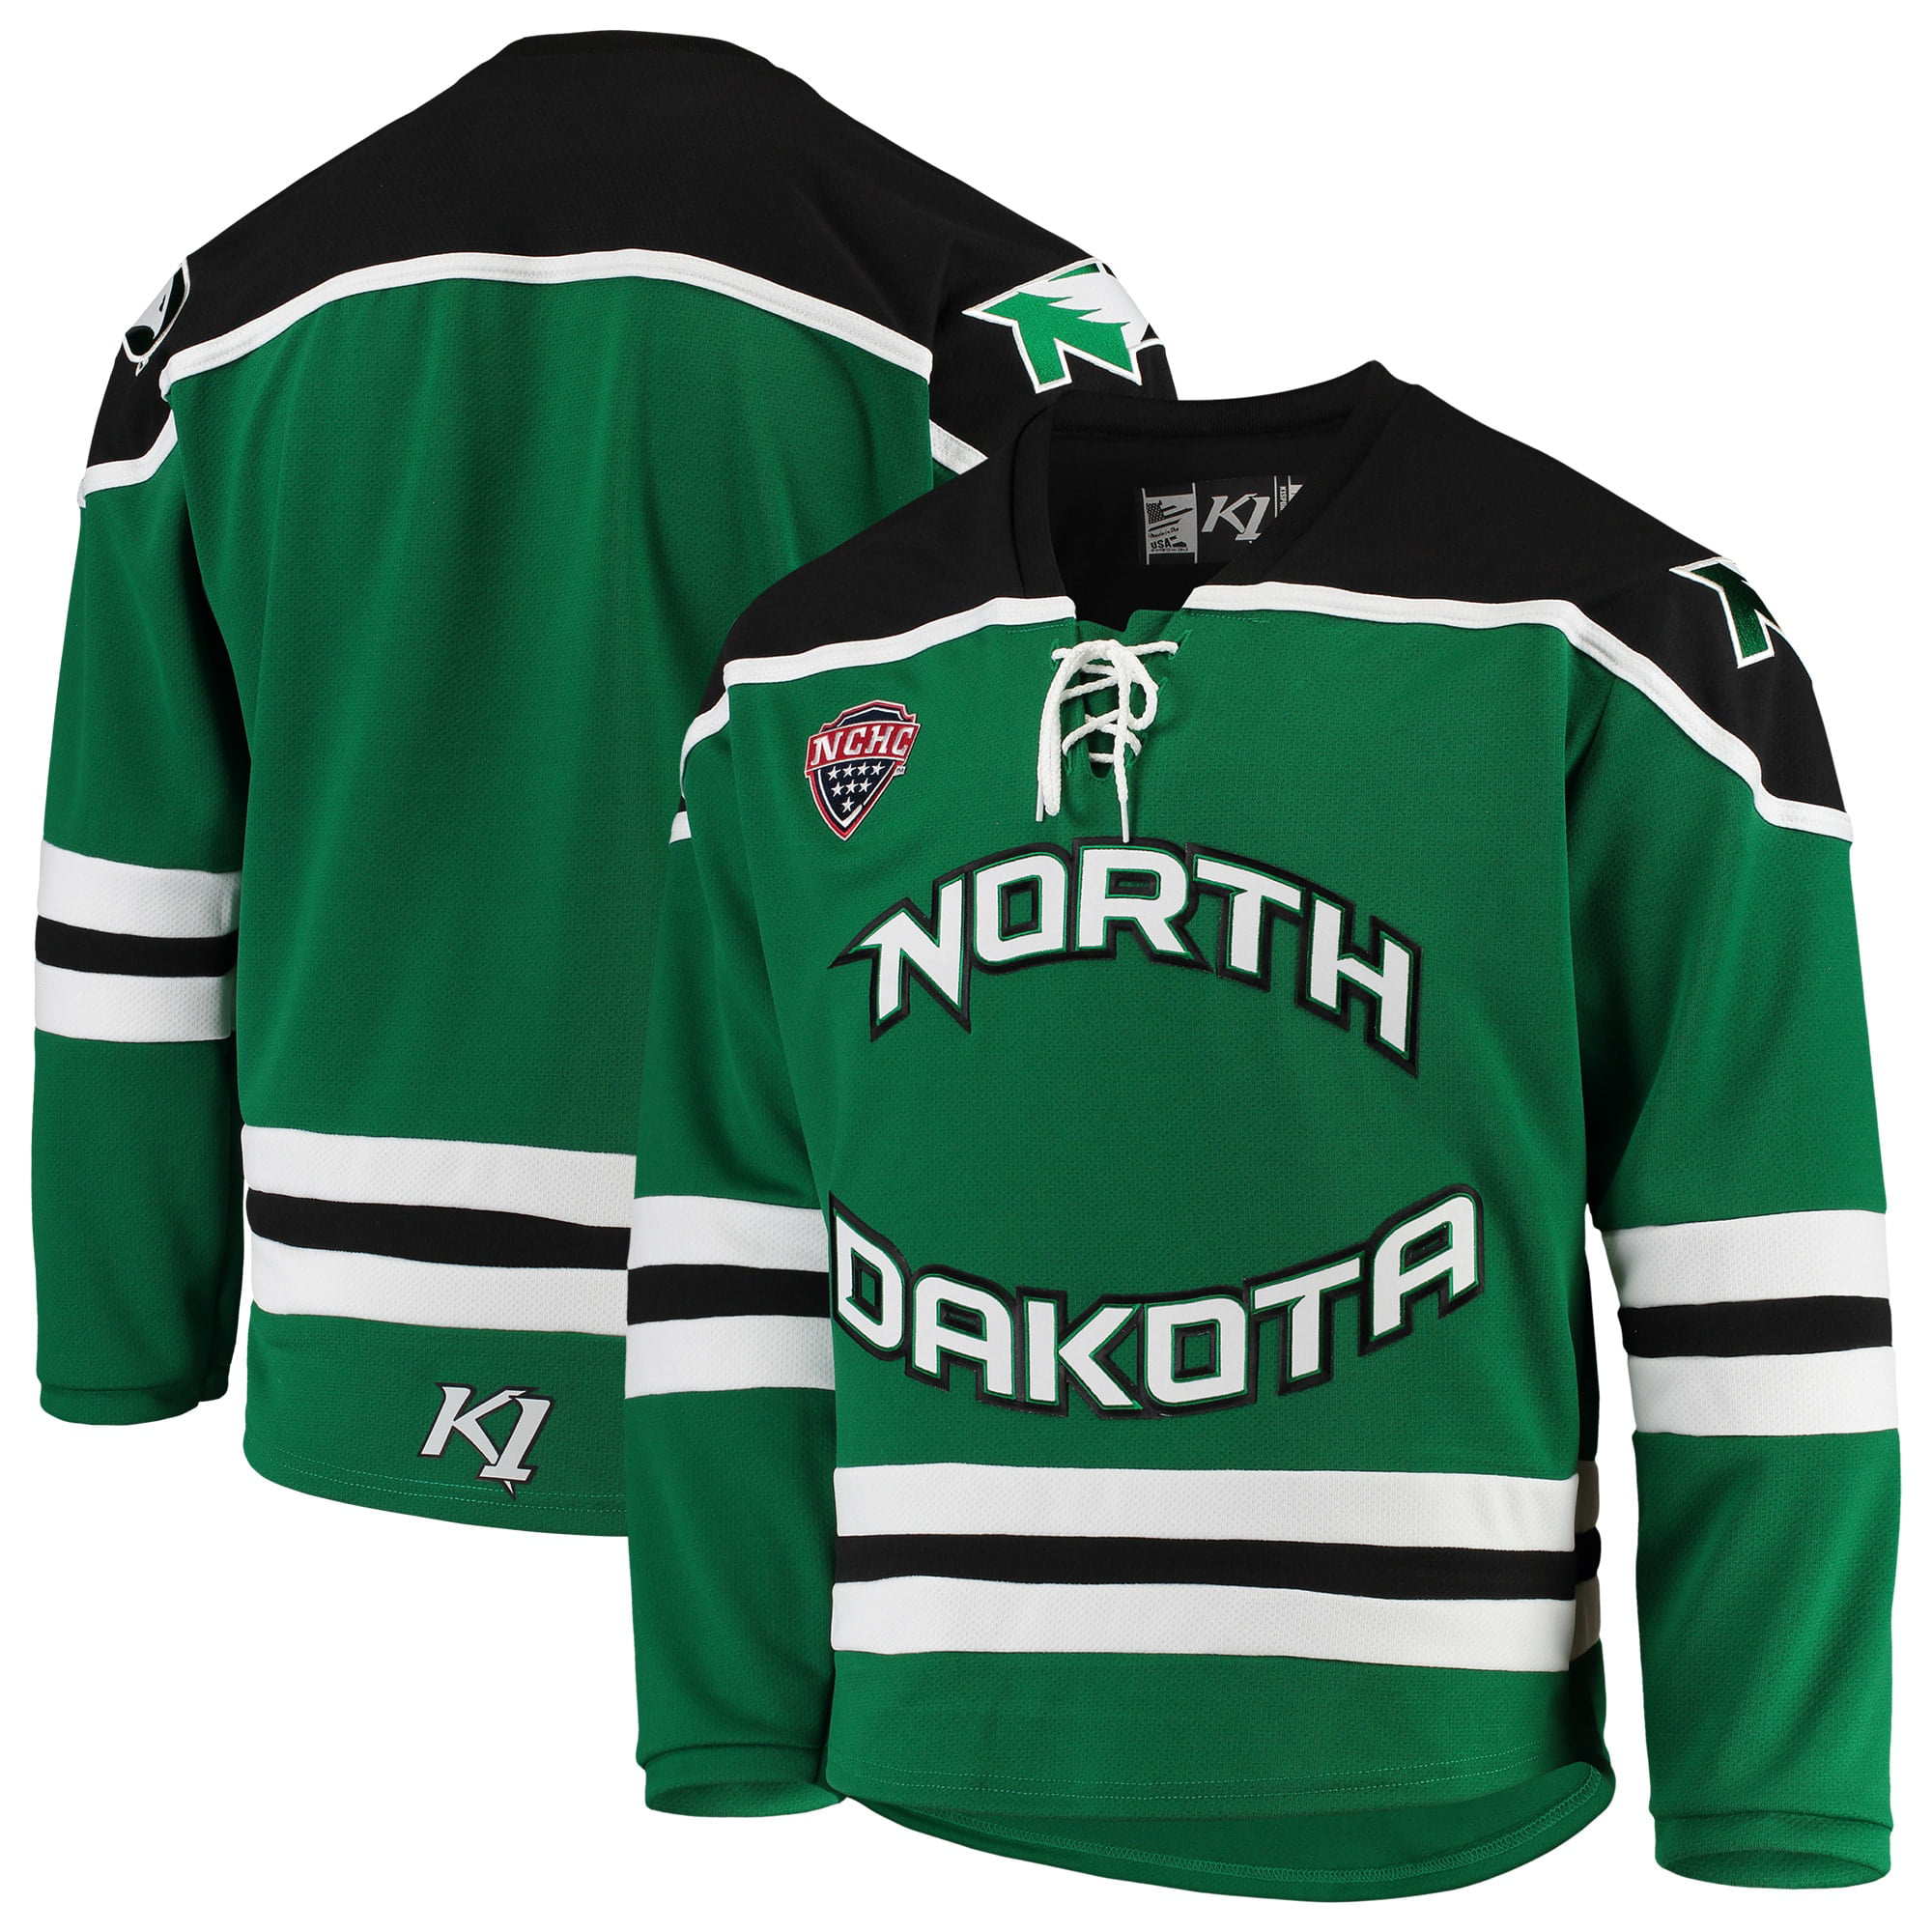 K1 Sportswear - North Dakota Replica Hockey Jersey - Green - Walmart.com - Walmart.com